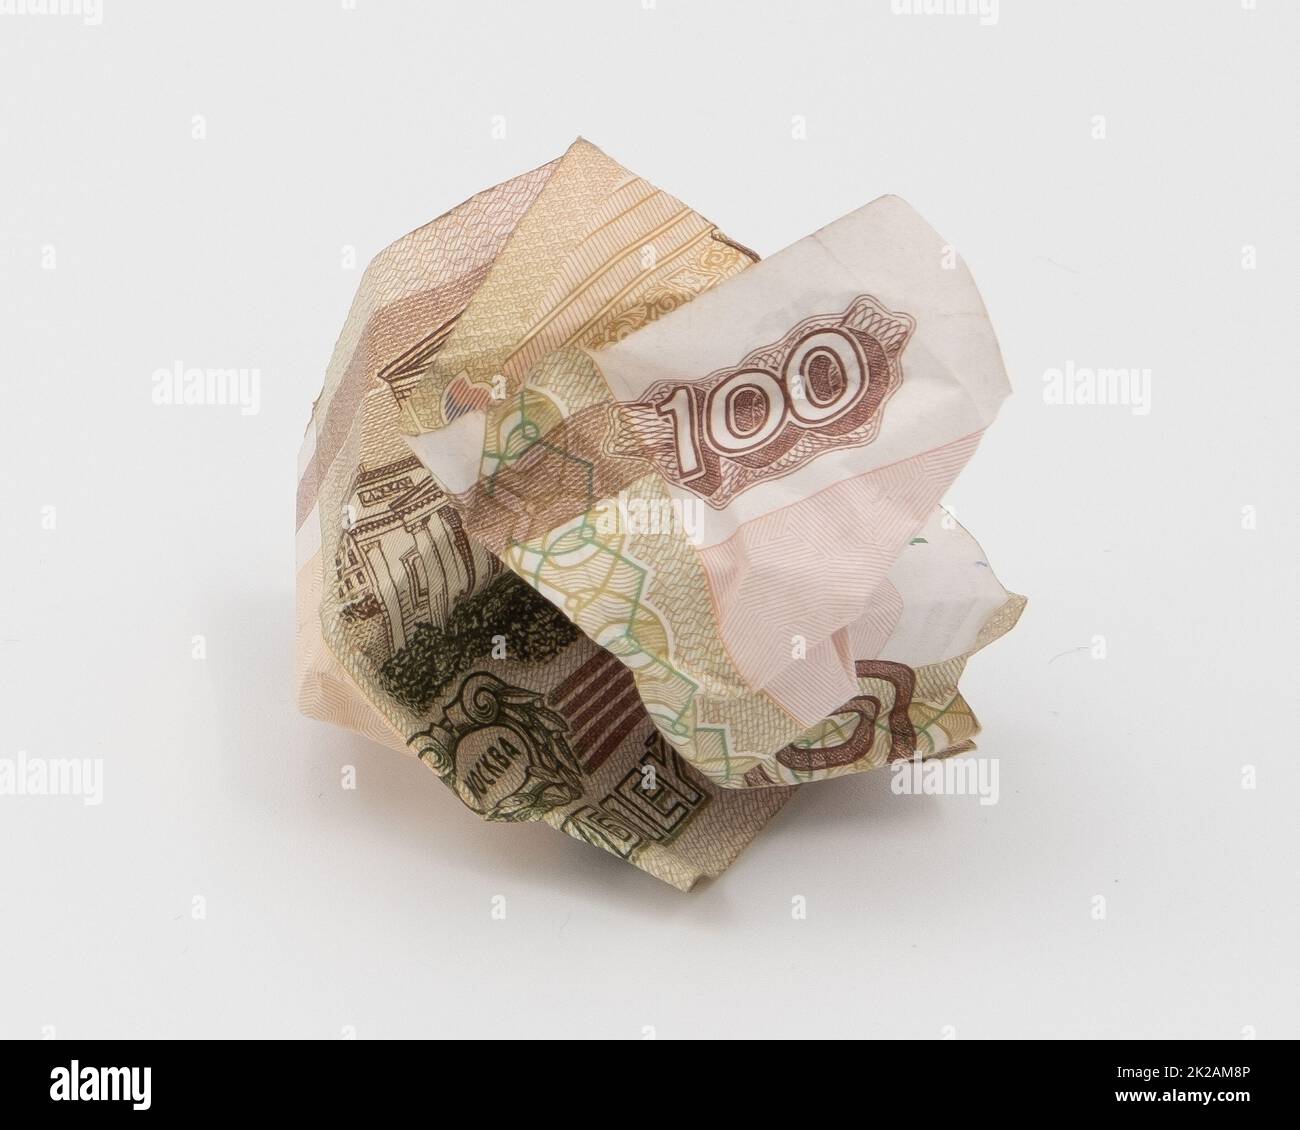 La vecchia banconota stropicciata di 100 rubli russi Foto Stock